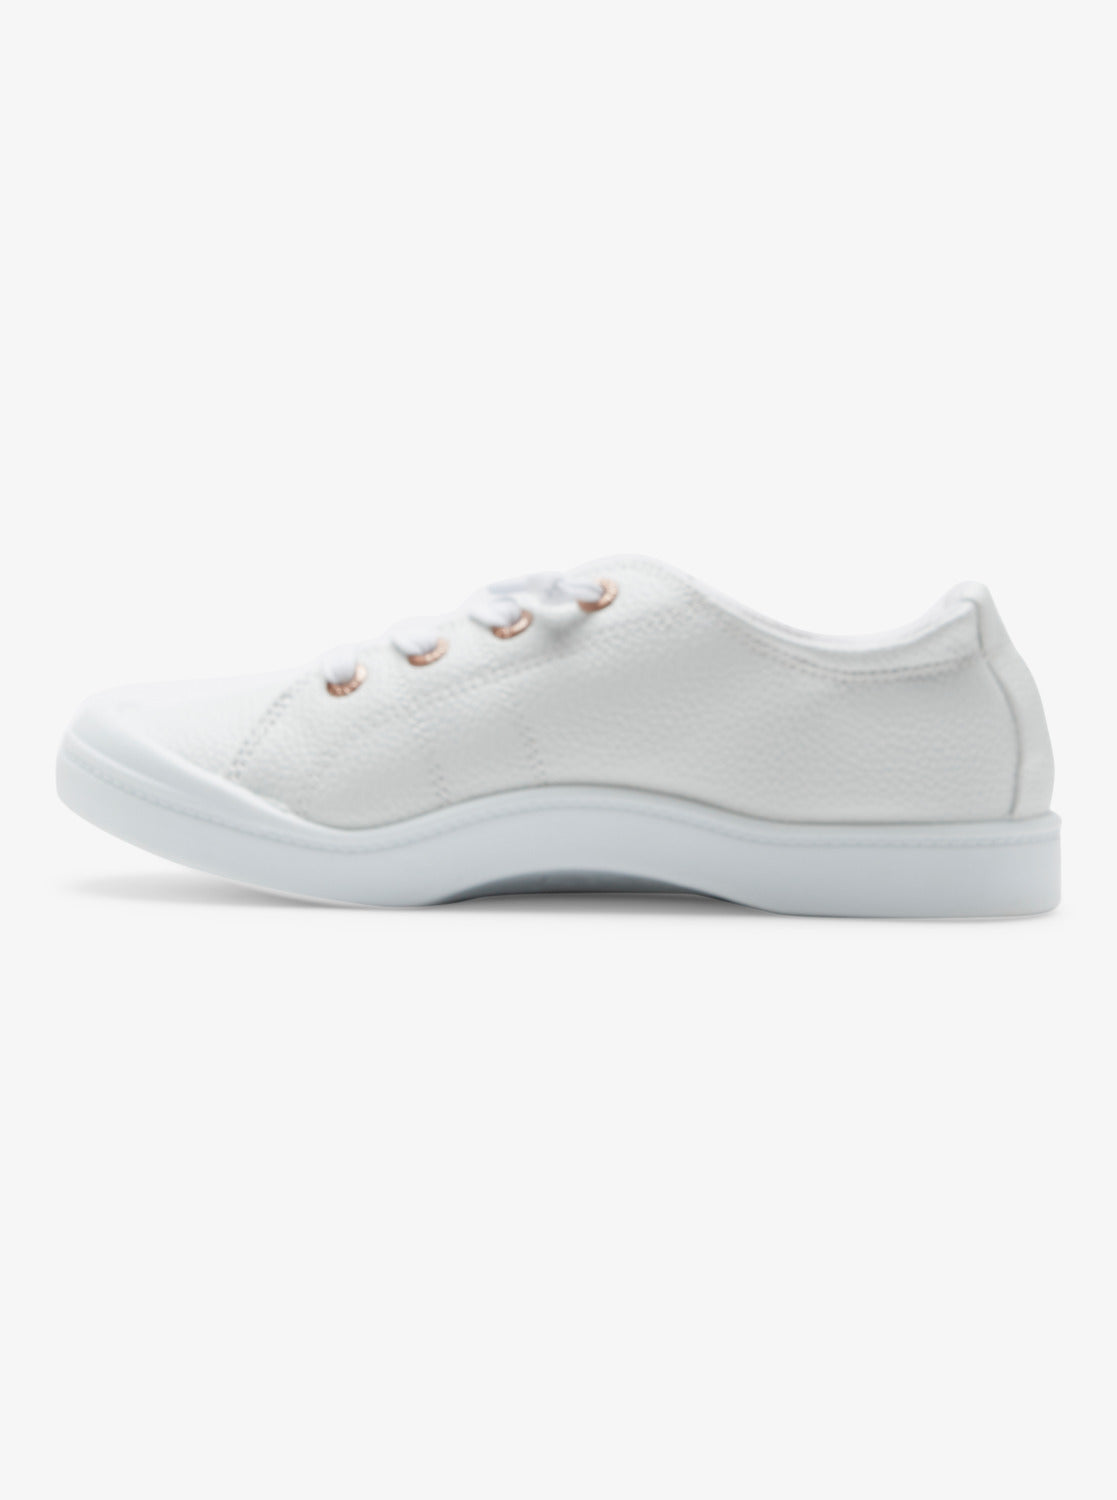 Bayshore Plus Shoes - White